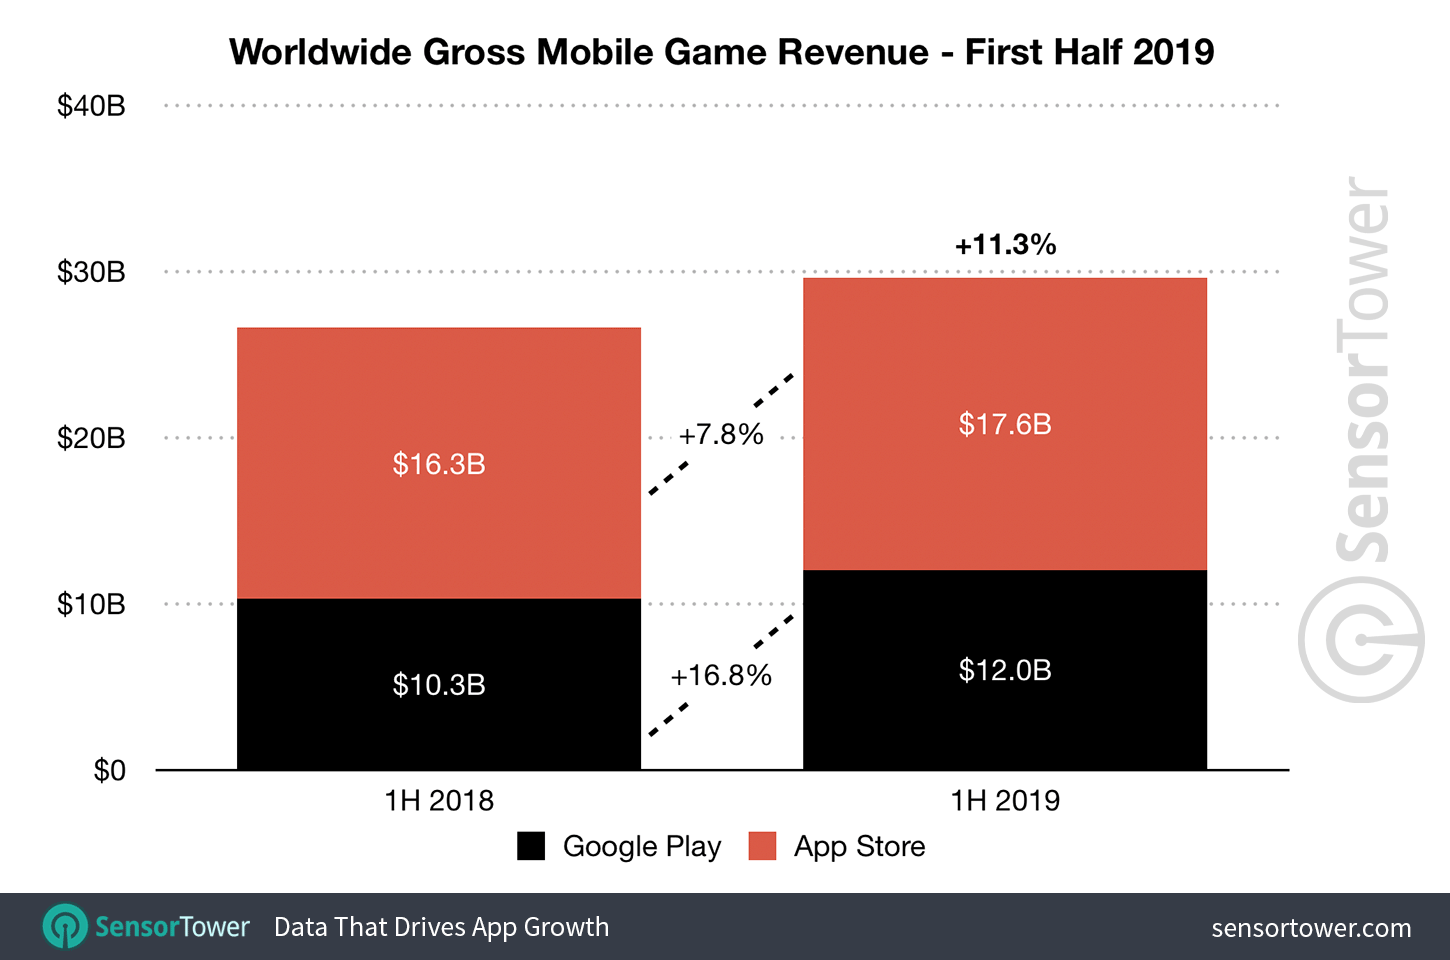 1H 2019 Mobile Game Revenue